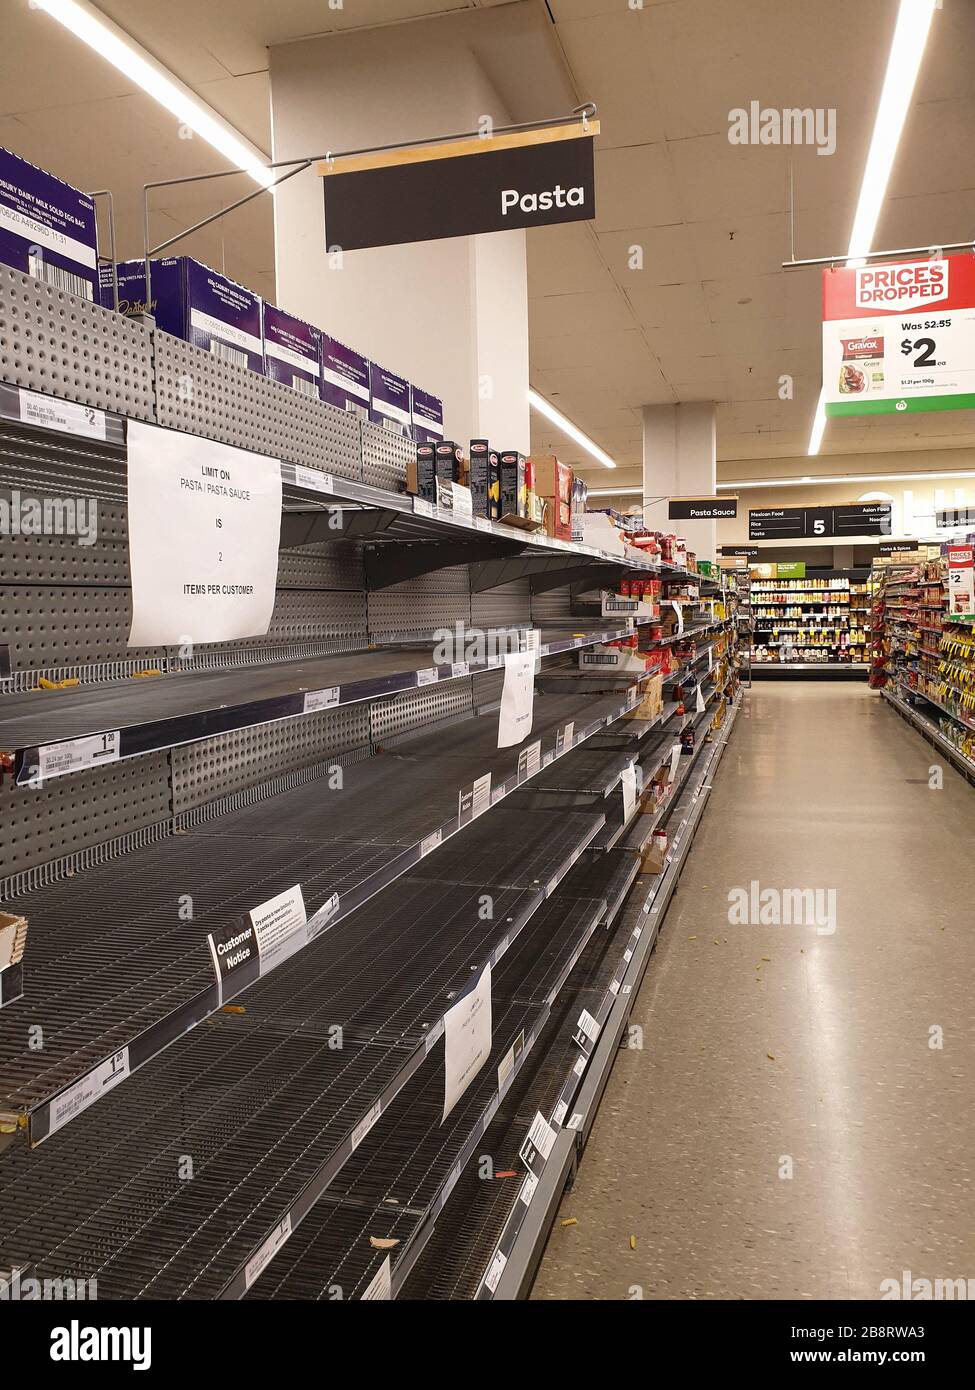 Costa de Oro, Australia - 21 de marzo de 2020: El supermercado Woolworths vacía las bandejas de pasta y salsa en medio de los temores de coronavirus, los compradores se asustan al comprar y almacenar pasta mientras Australia se prepara para una pandemia. Foto de stock